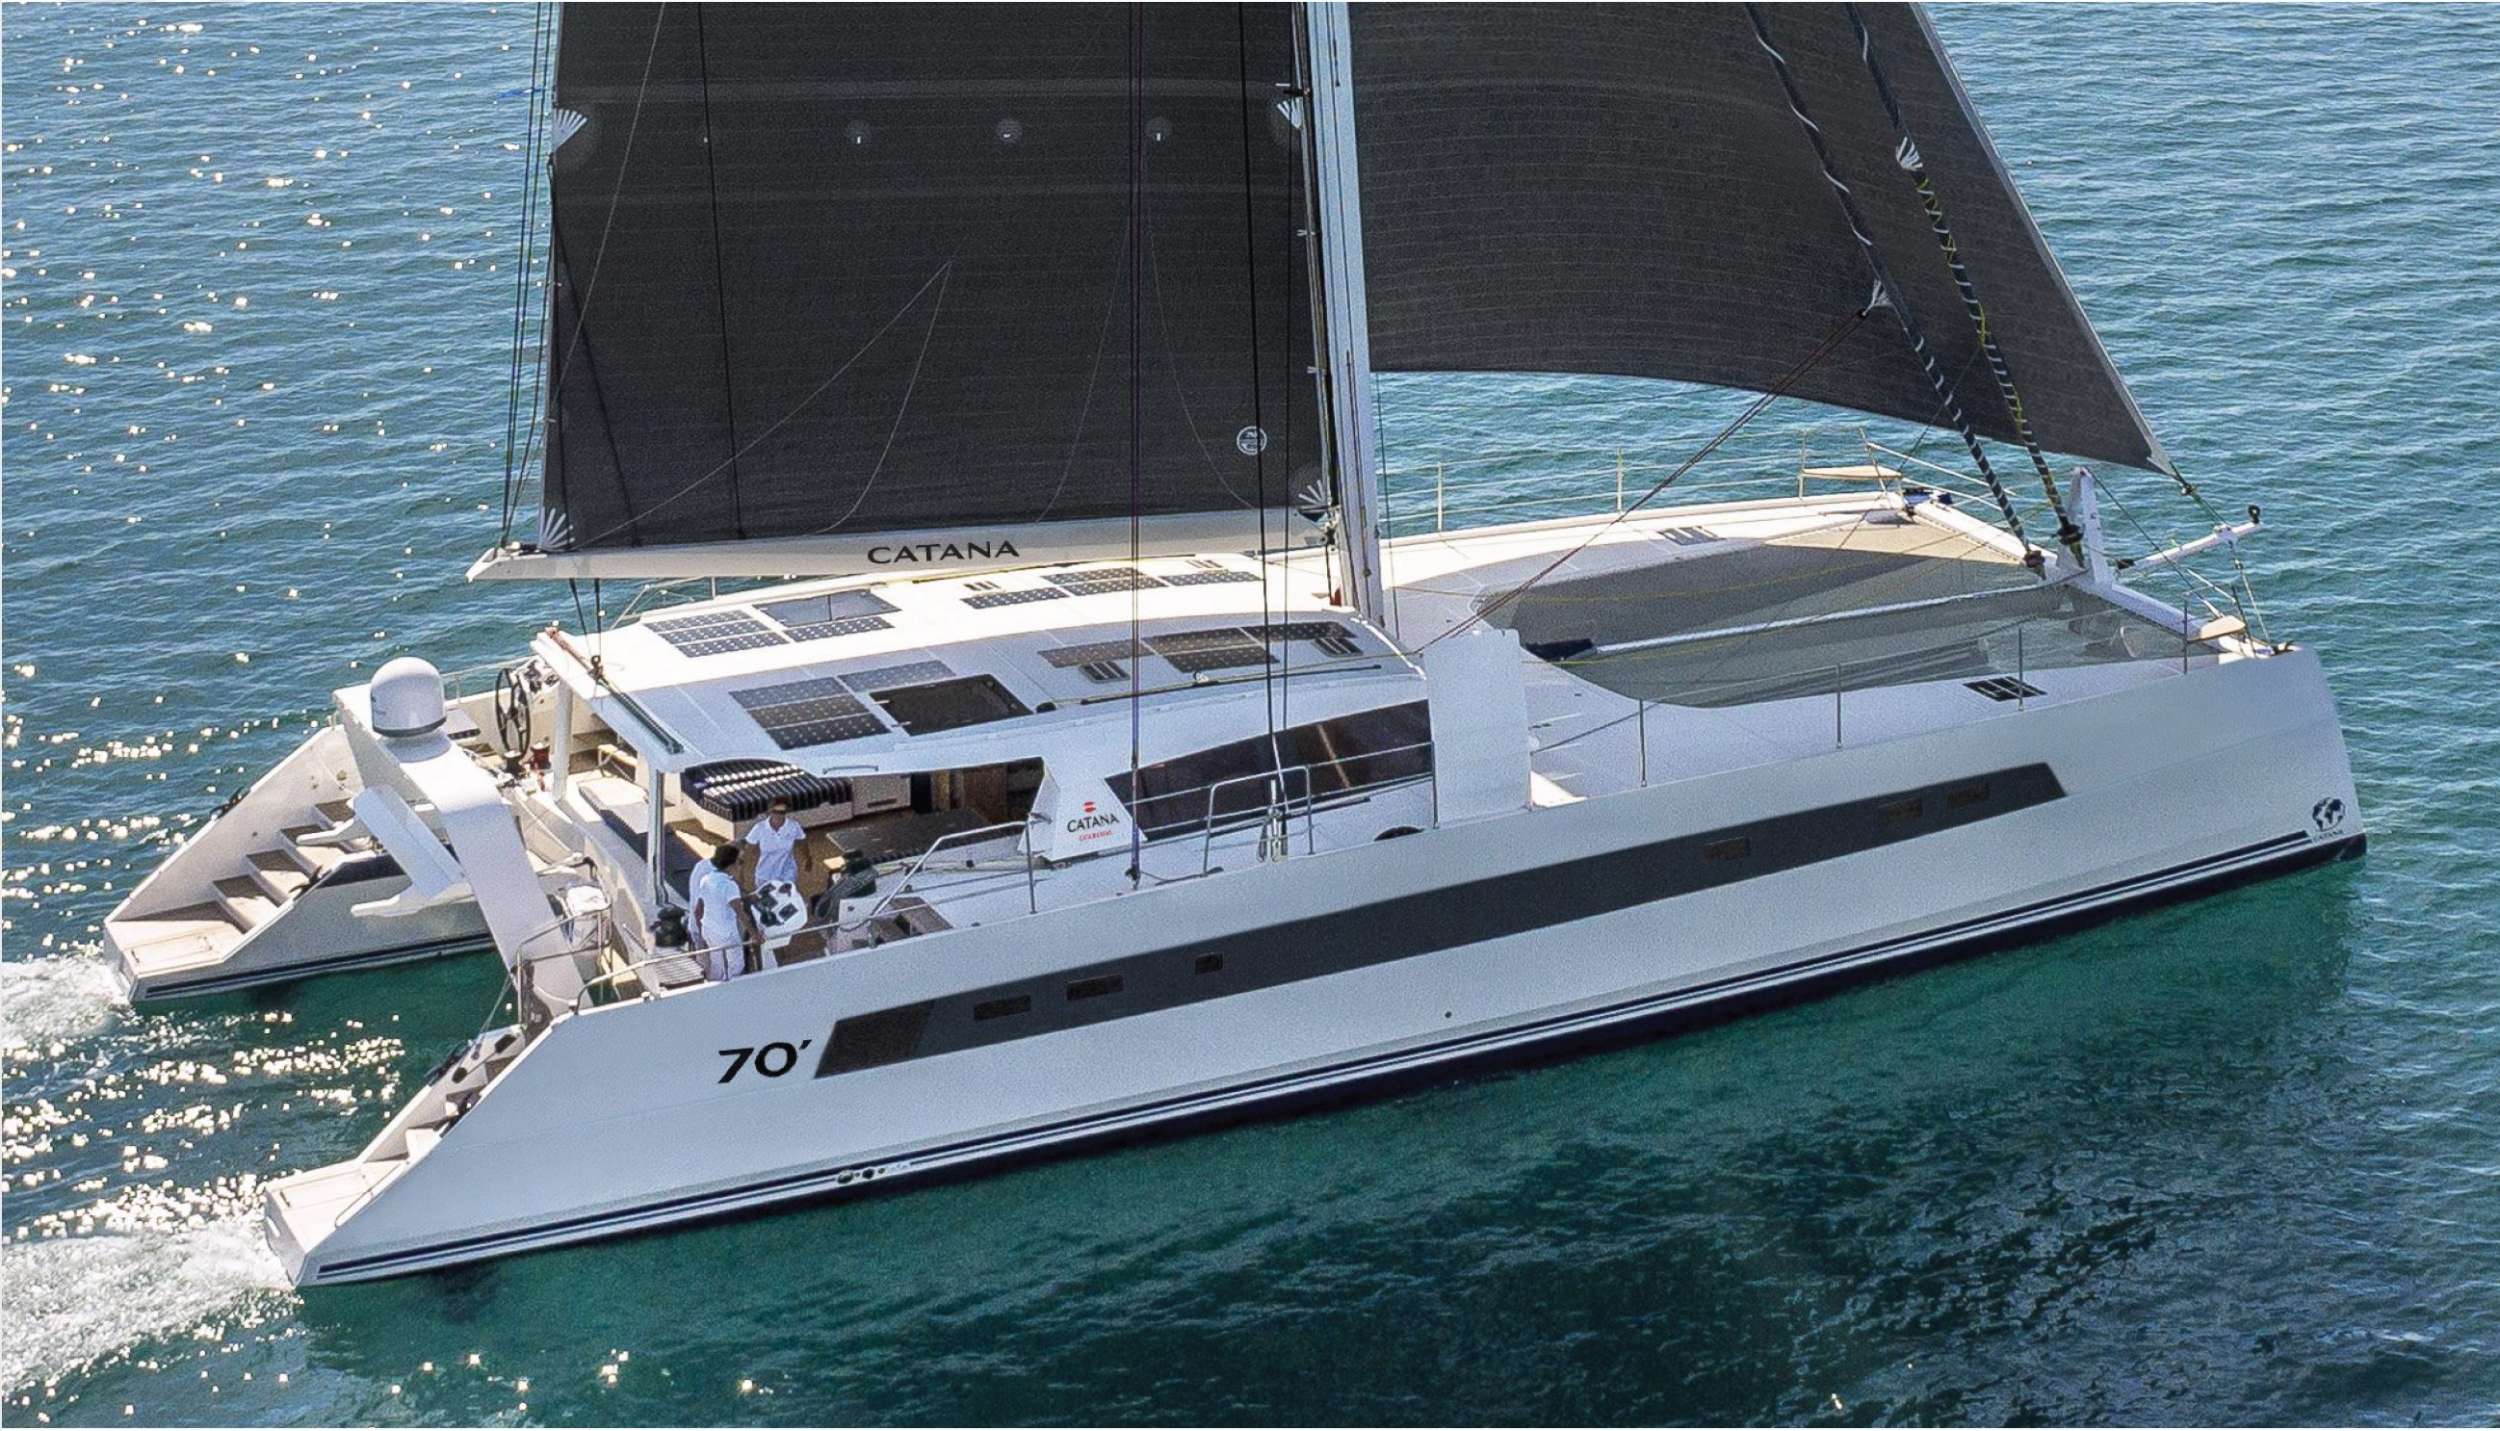 NEPTUNE - Yacht Charter Sorrento & Boat hire in Fr. Riviera & Tyrrhenian Sea 1